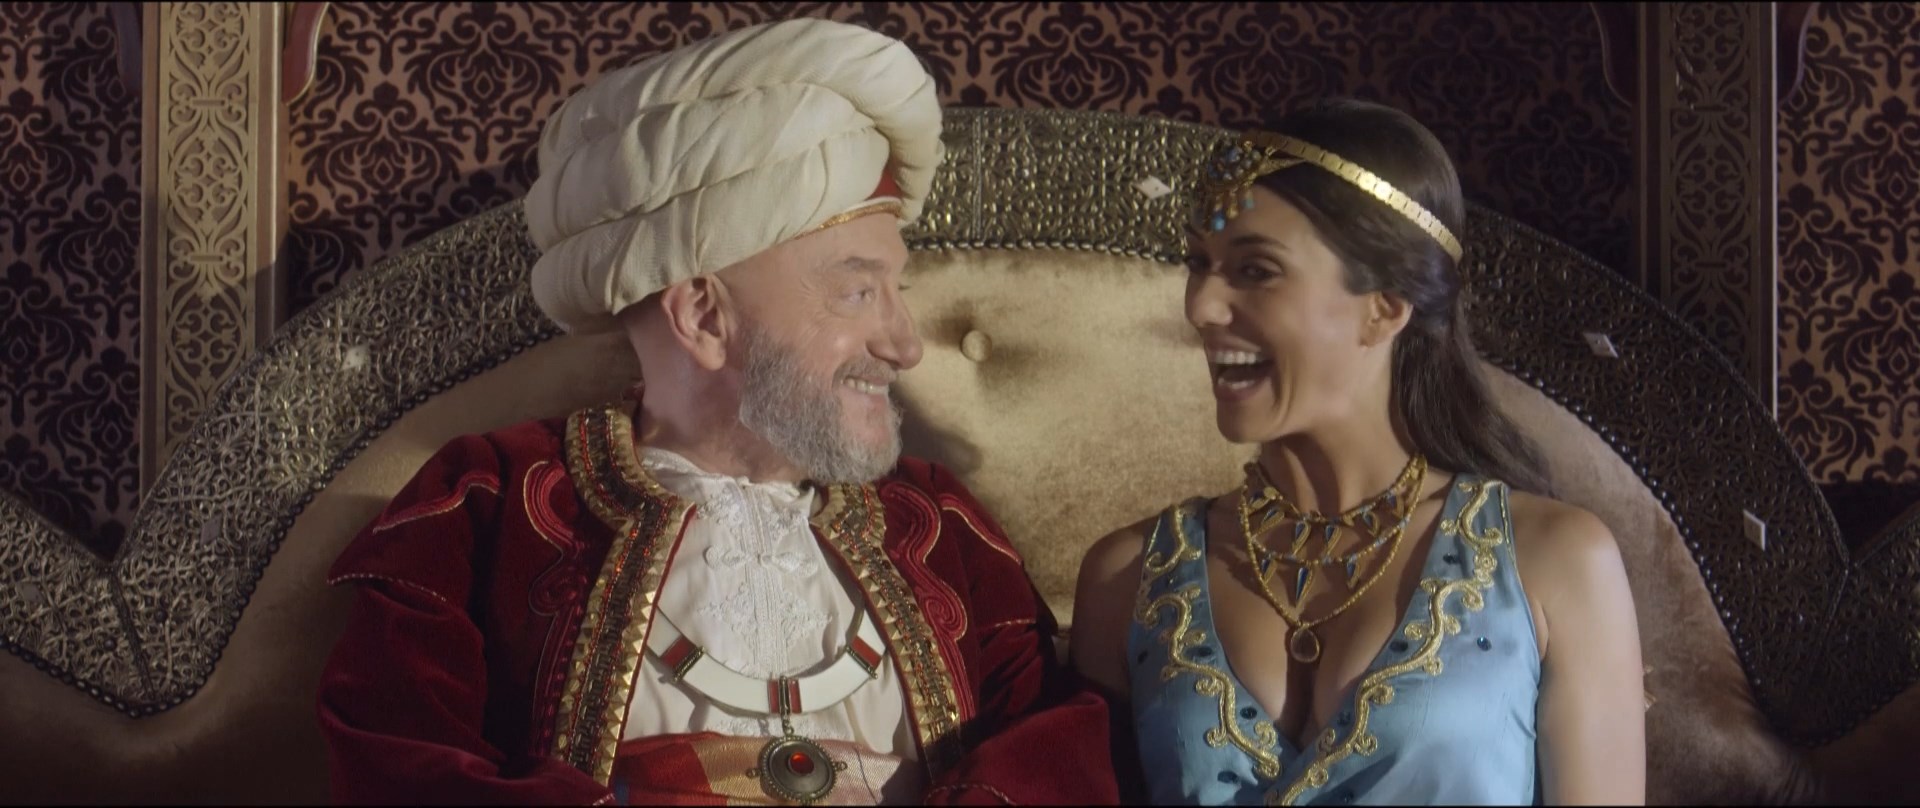 Vanessa Guide - Les nouvelles aventures d'Aladin (2015) HD 1080p